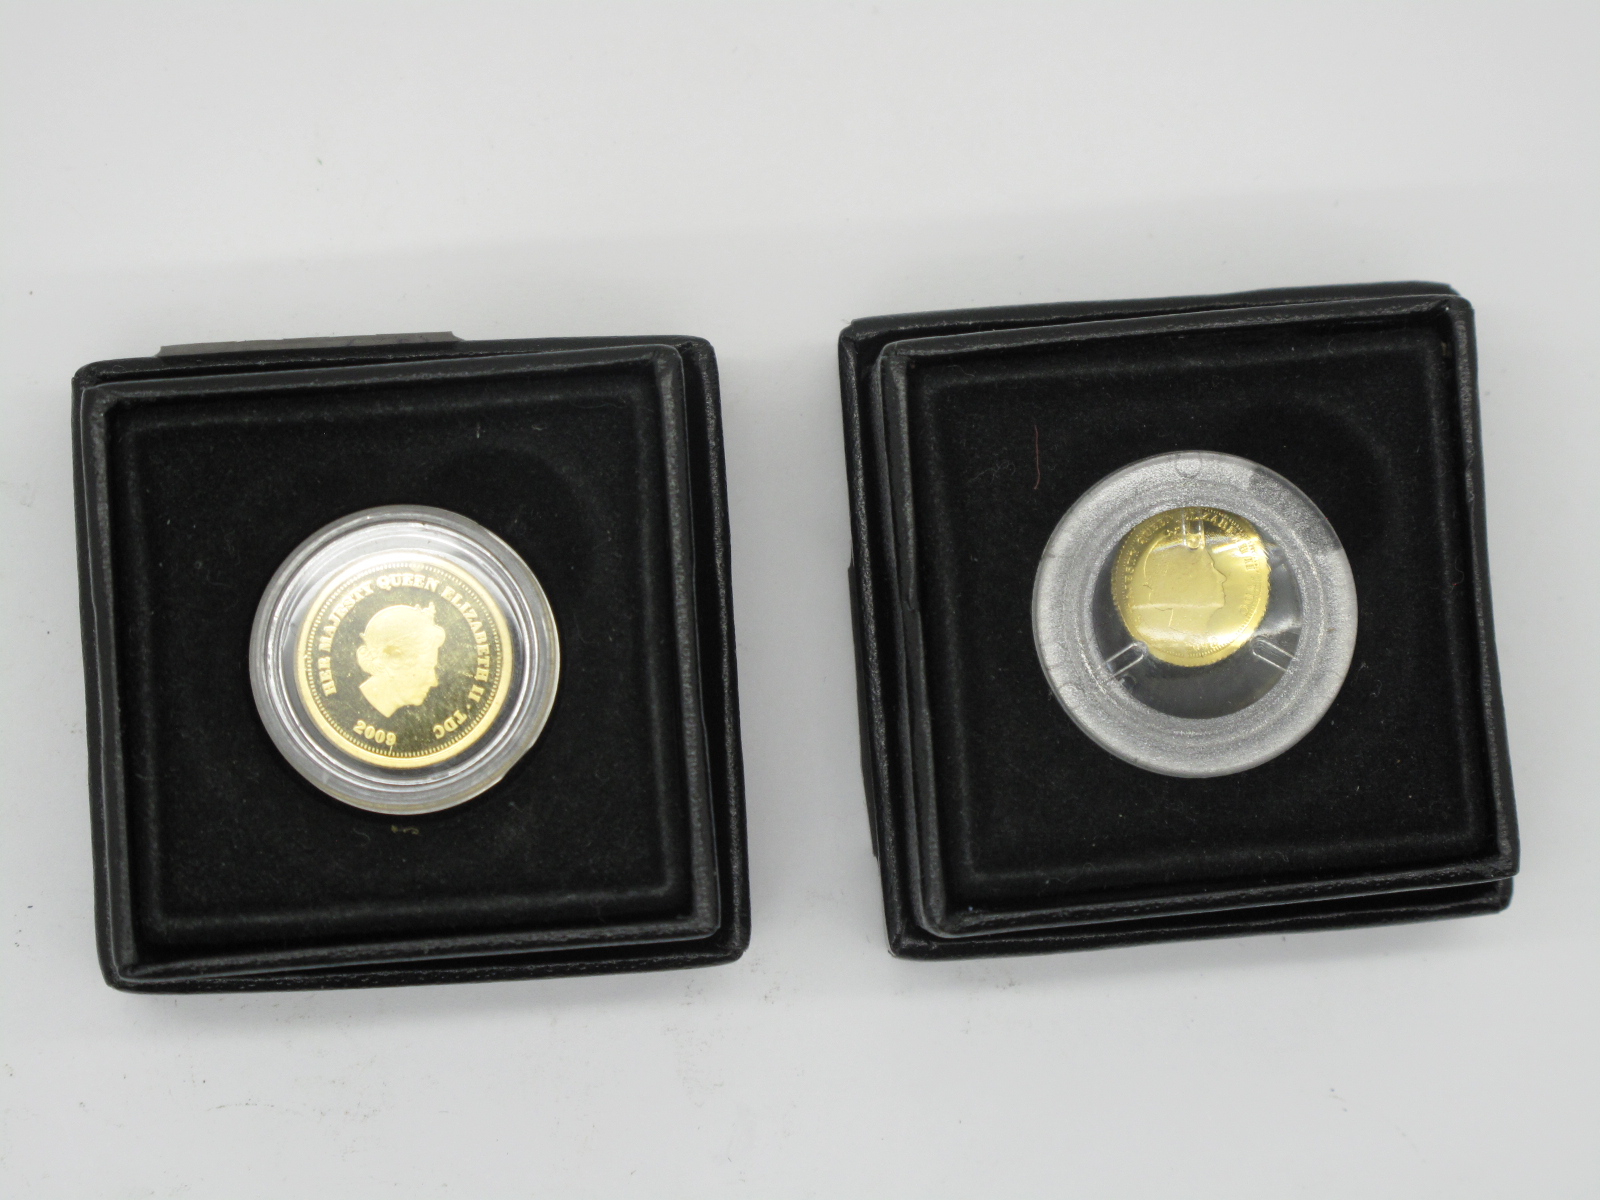 Elizabeth II Half Crown Gold Coin, 2009, in capsule and Fabula Aurum box; Elizabeth II Half Crown